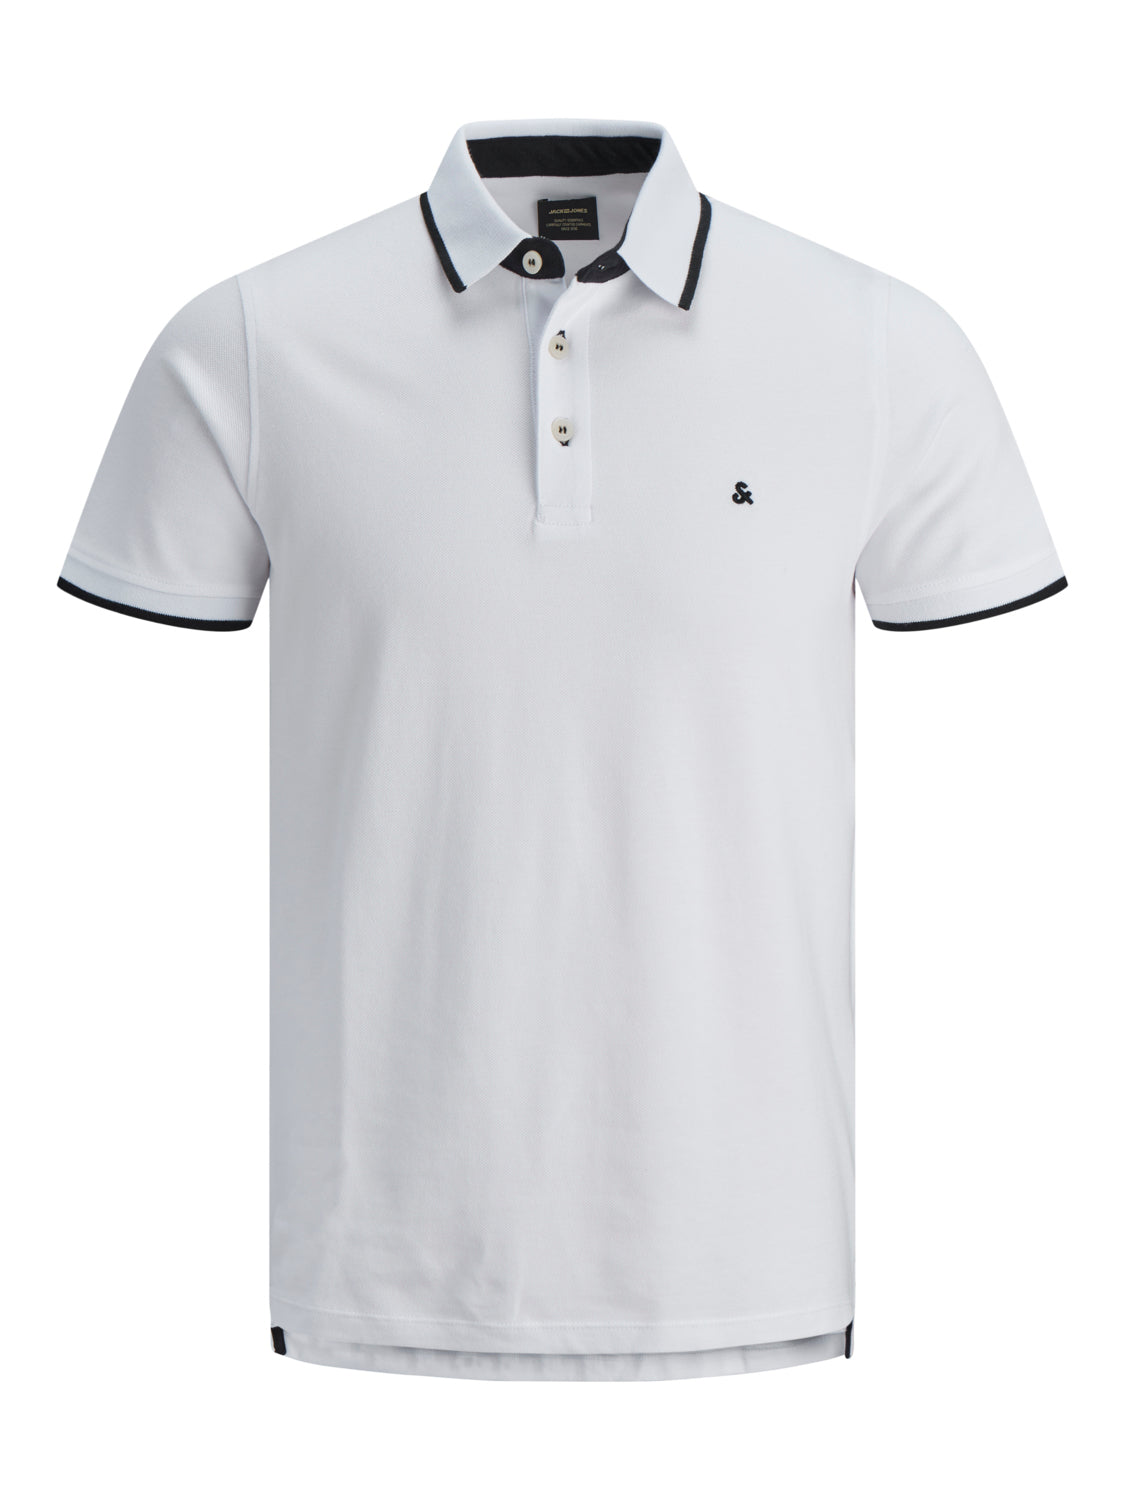 JJEPAULOS Polo shirt - white